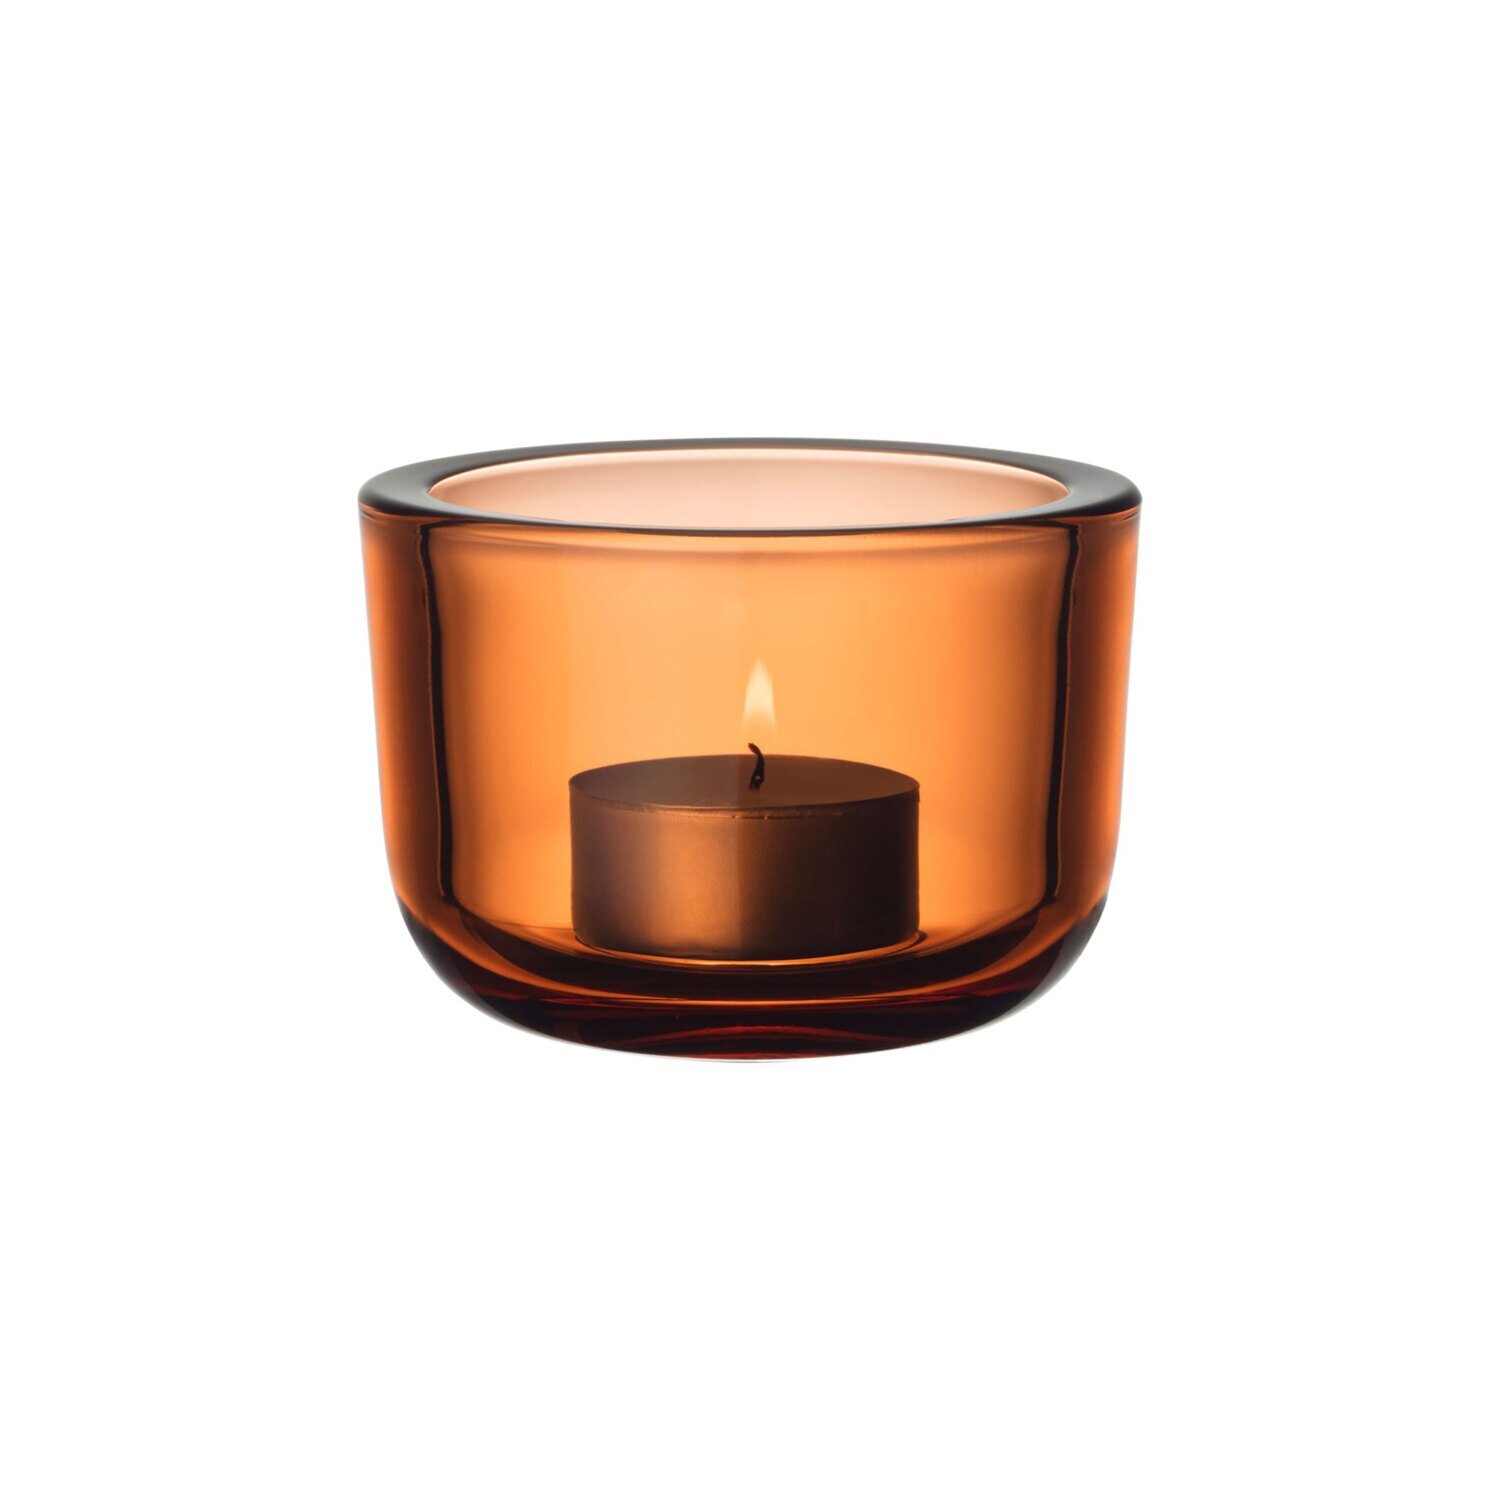 iittala Valkea Tealight Candleholder 2.25 Inch Seville Orange